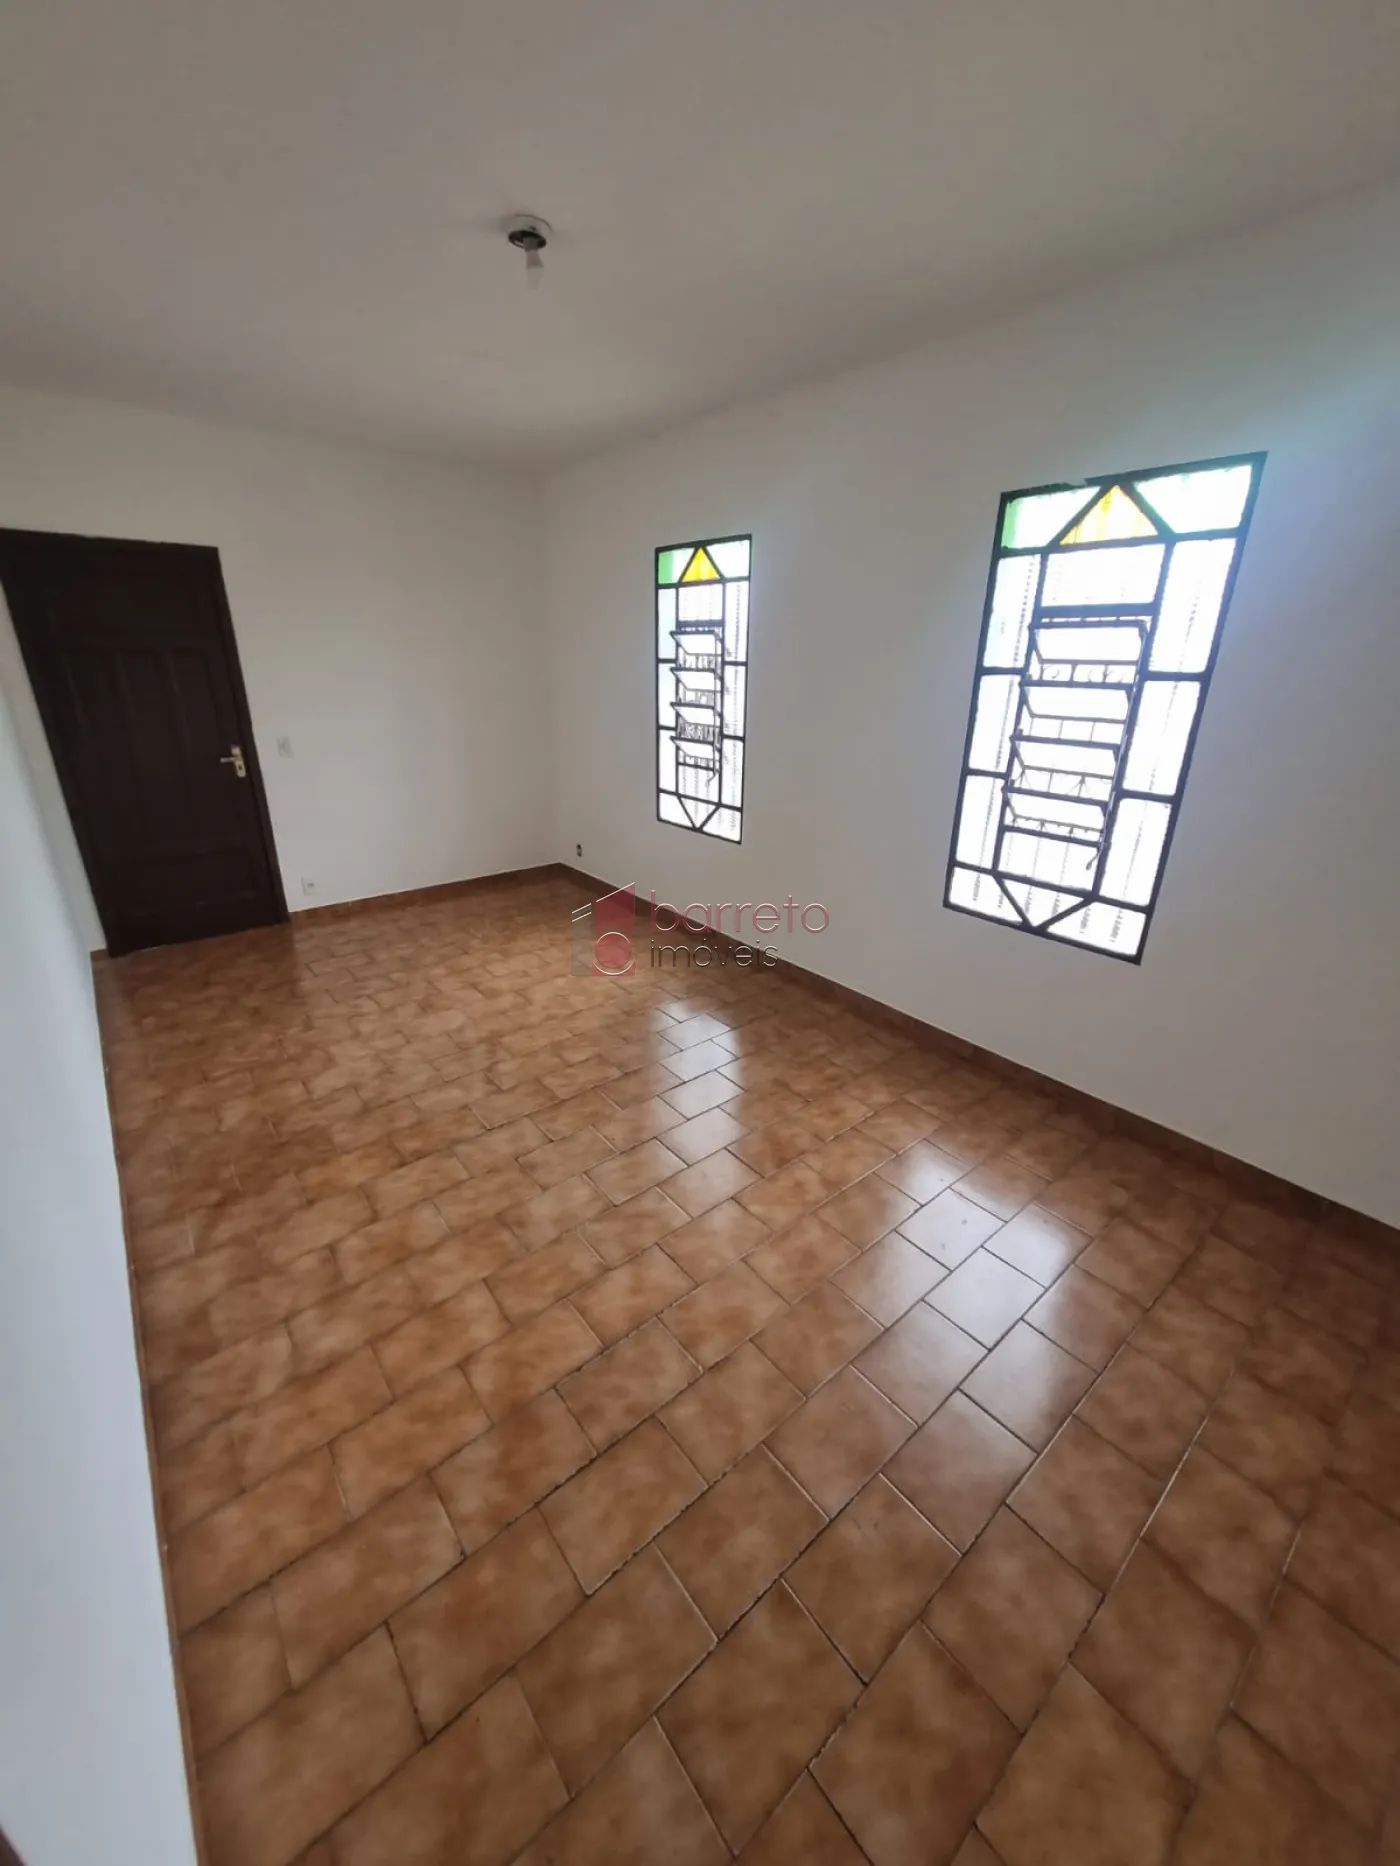 Comprar Casa / Padrão em Jundiaí R$ 380.000,00 - Foto 7